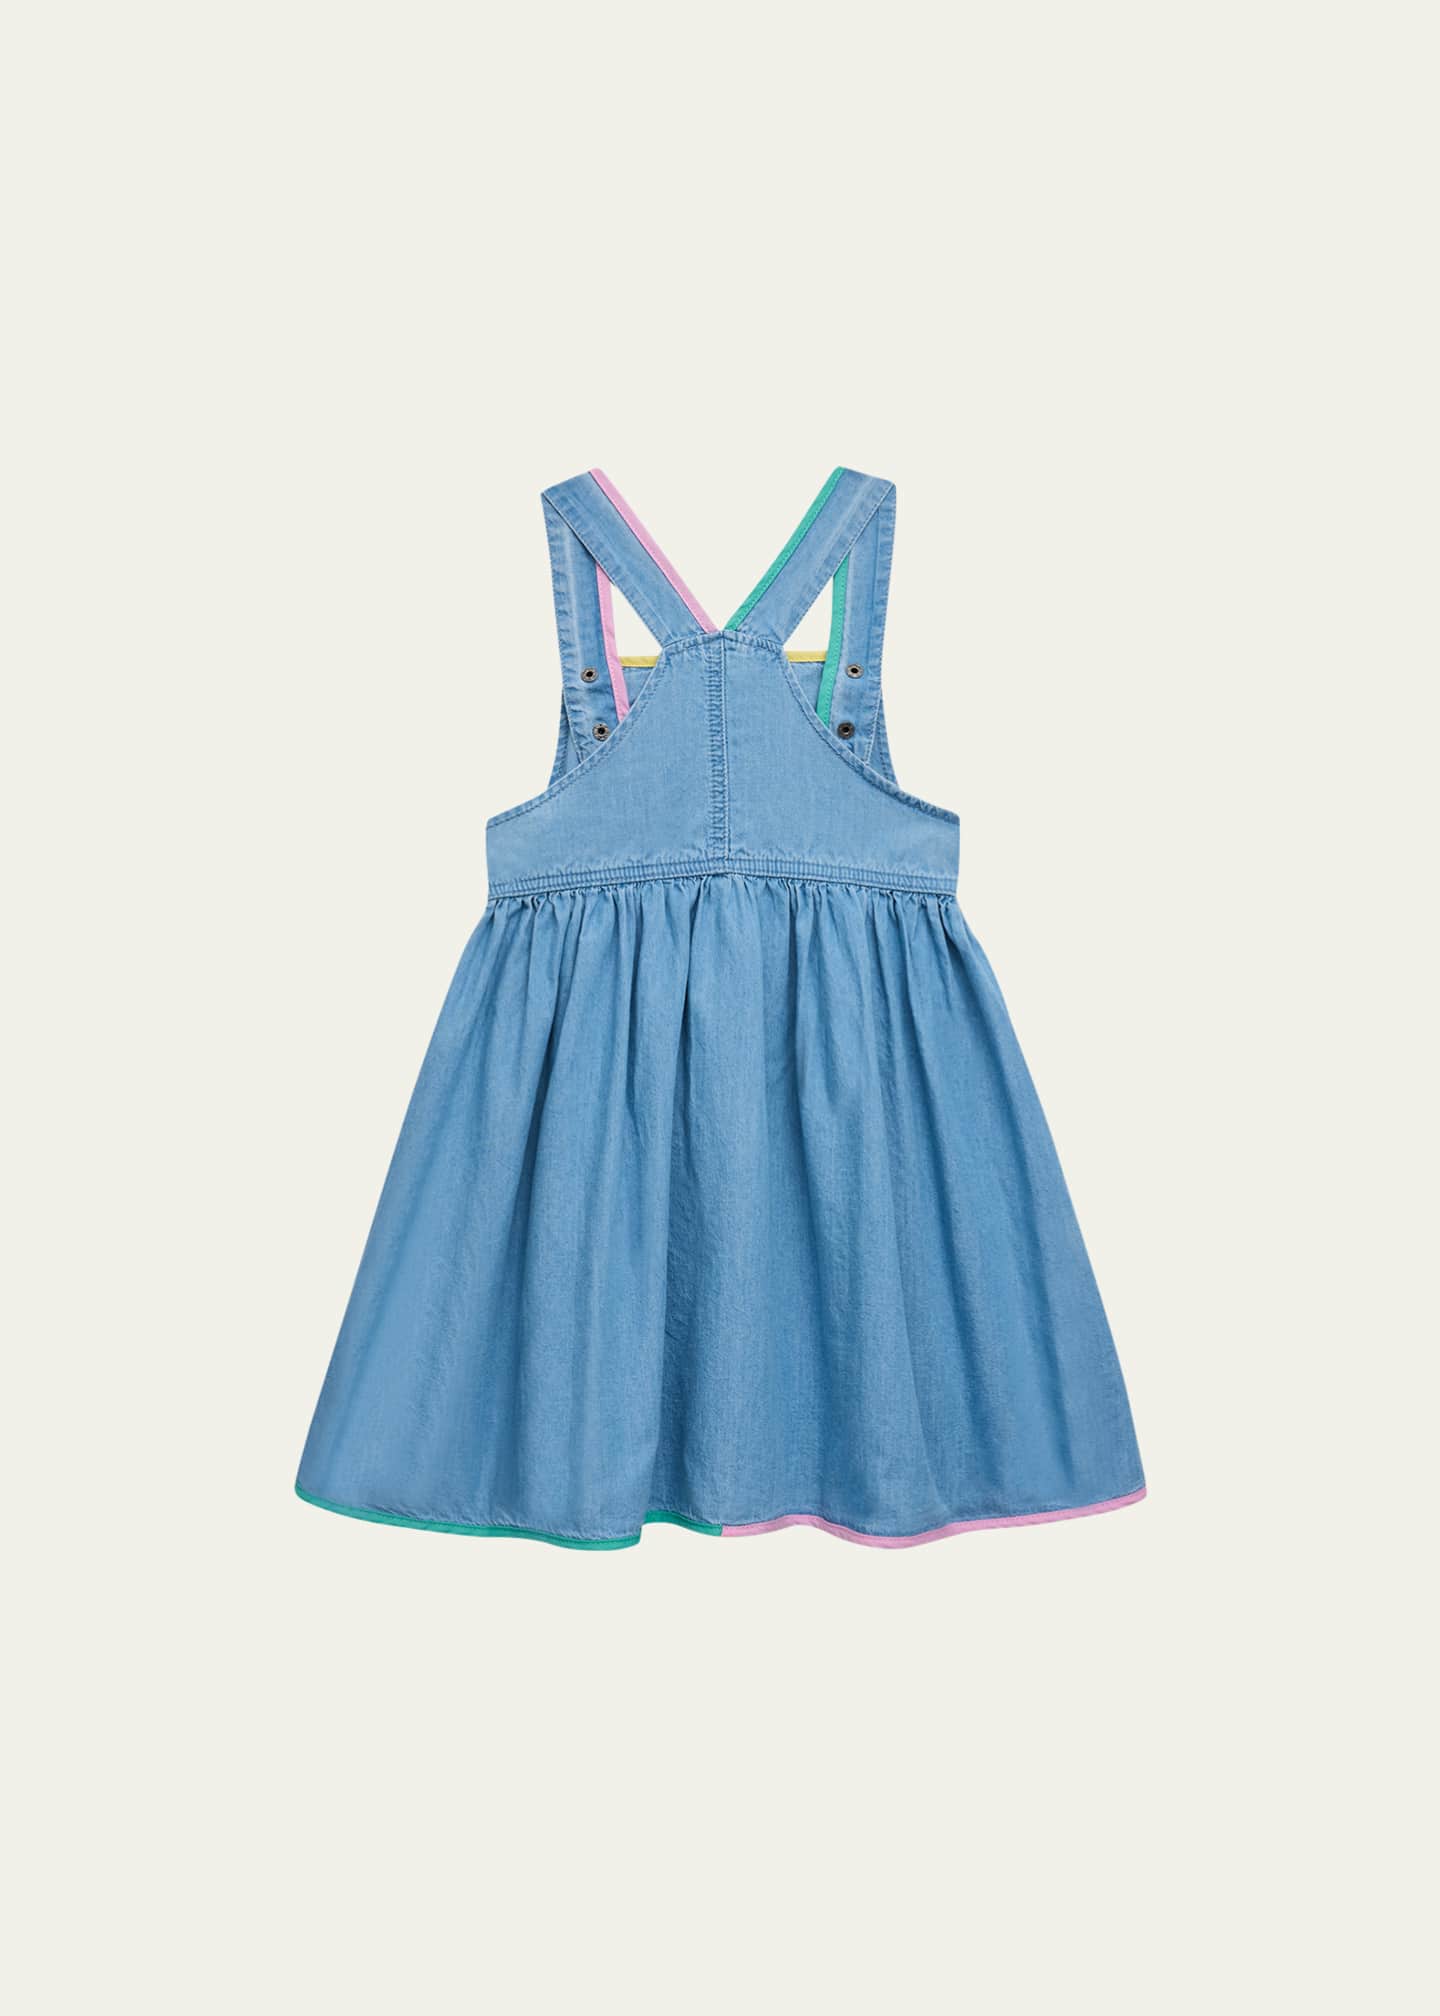 Stella McCartney Kids - Girls Blue Chambray Dungaree Dress